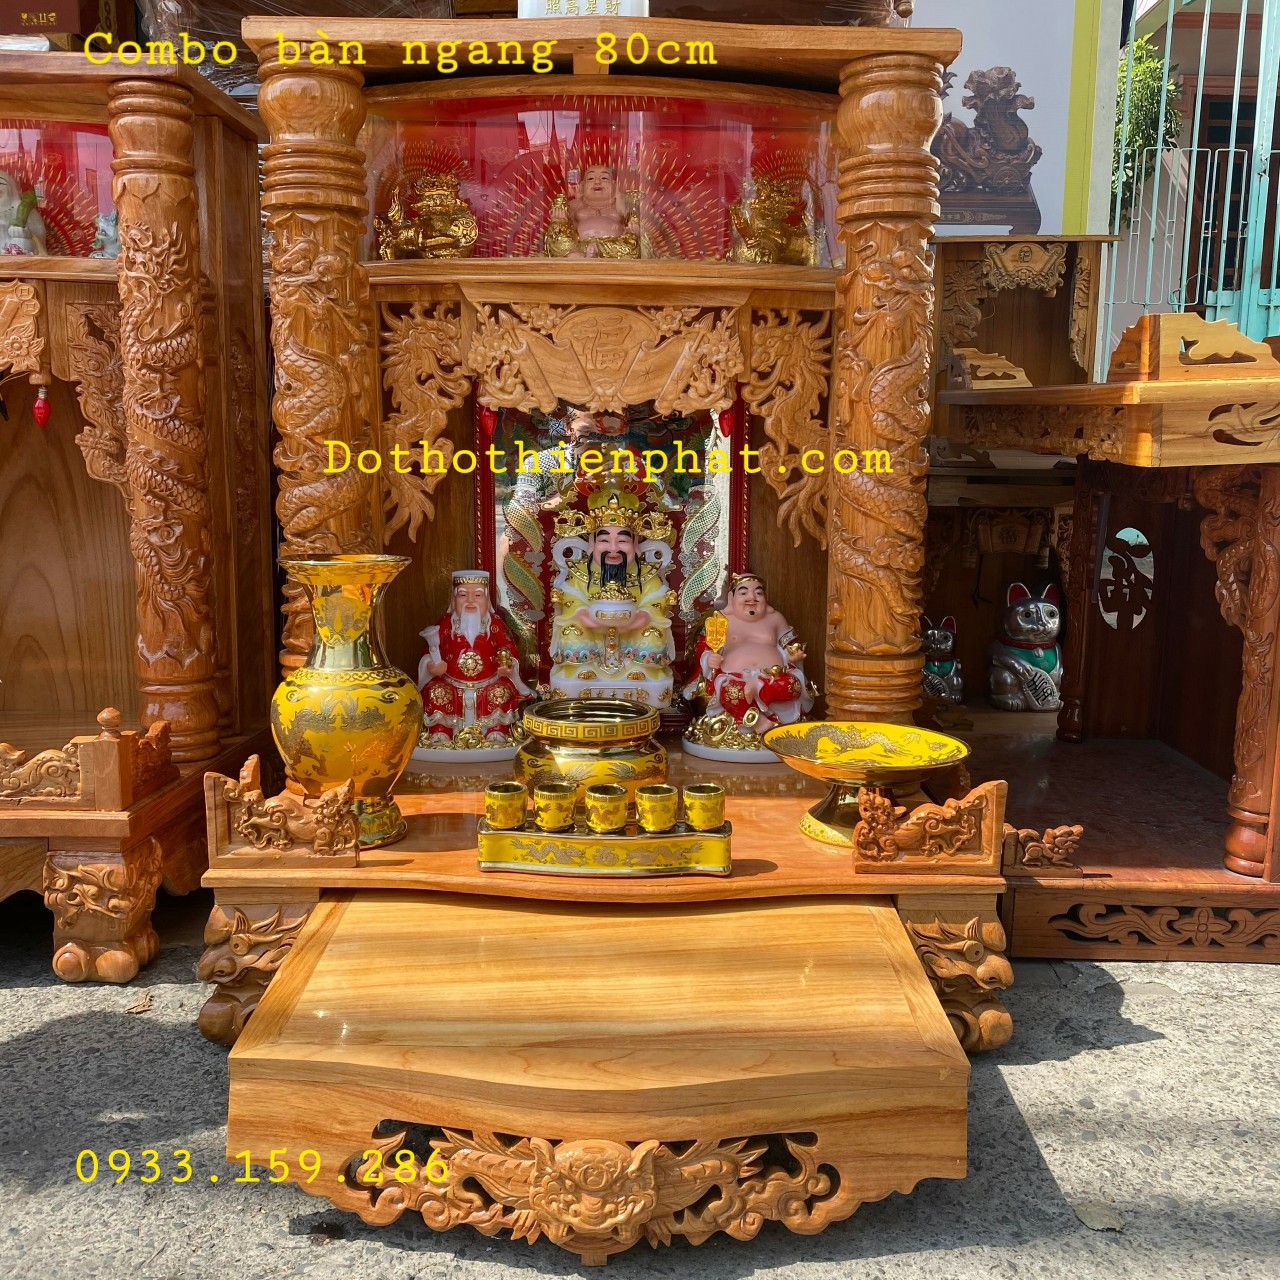 COMBO Bộ bàn thờ ngang 80cm gỗ gõ đỏ rất đẹp - Đồ thờ Thiên Phát